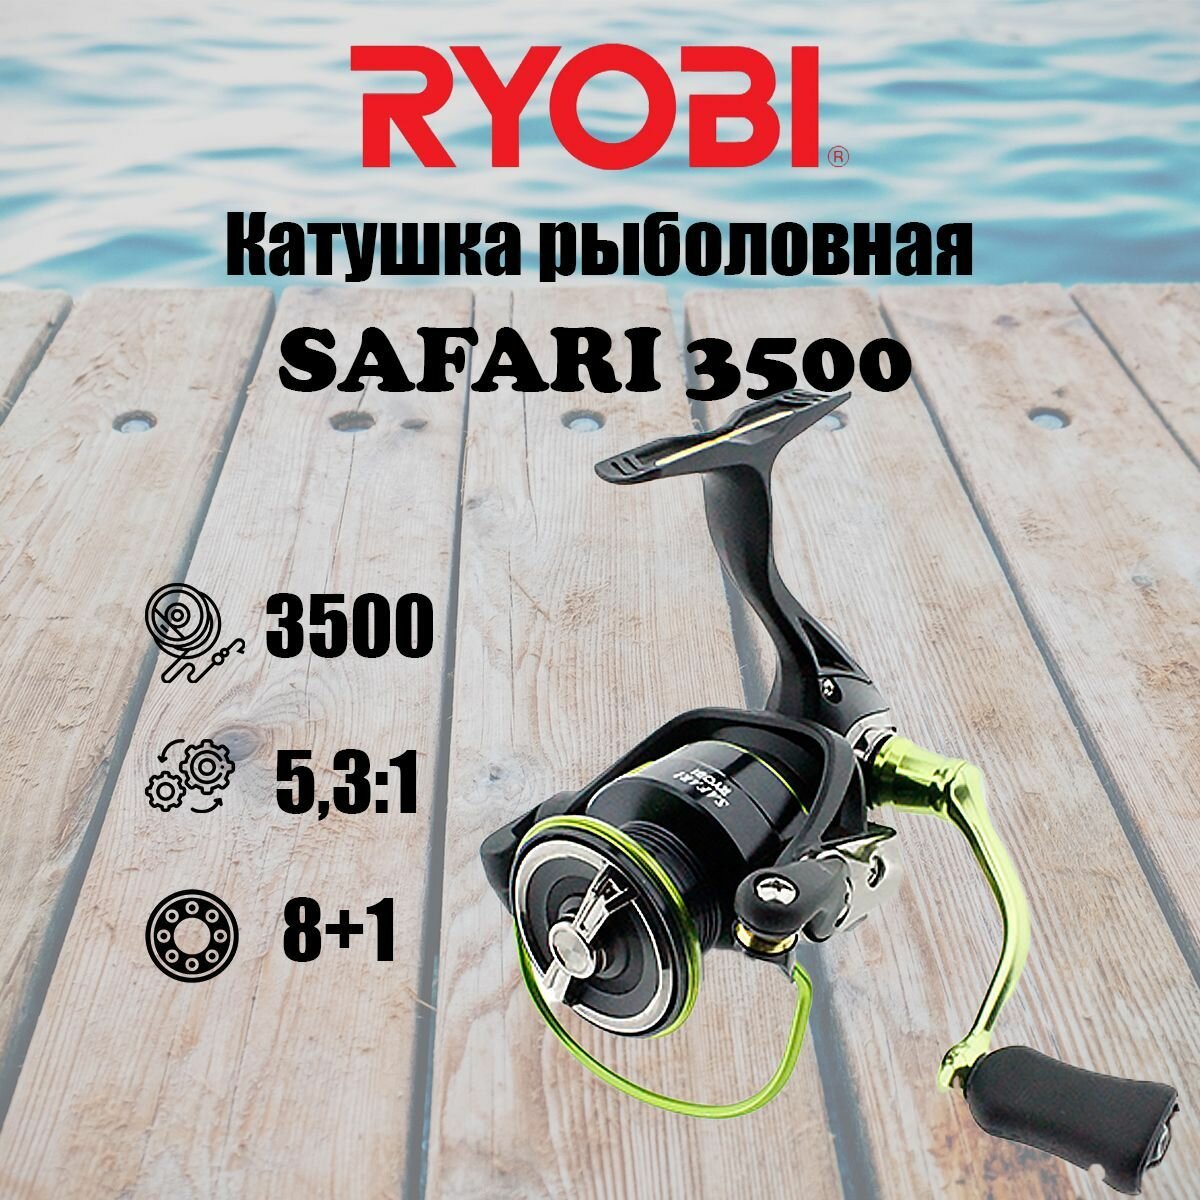 Катушка для рыбалки RYOBI SAFARI 3500